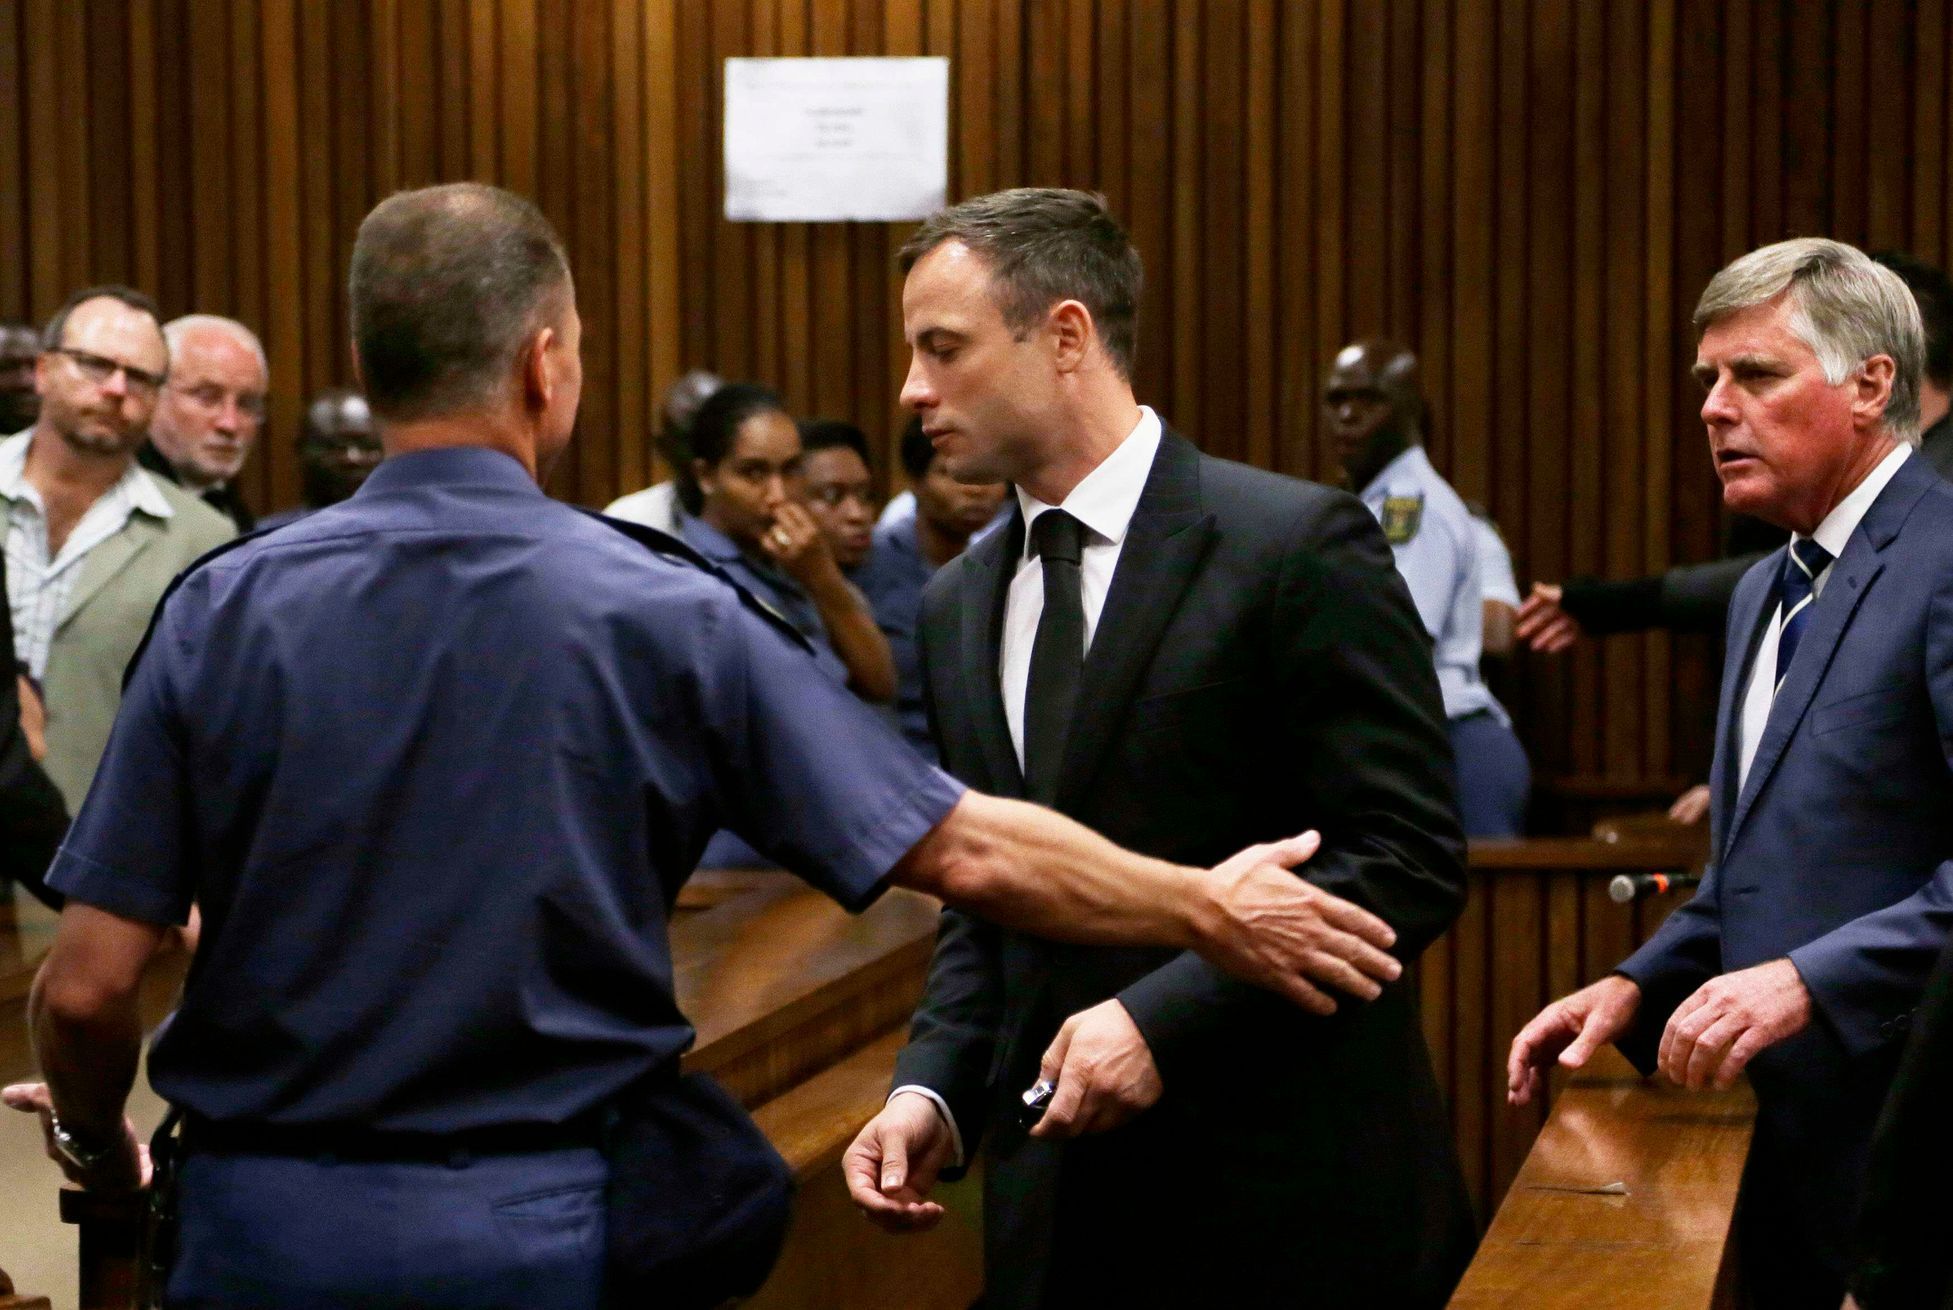 Oscara Pistoriuse odvádějí do cely